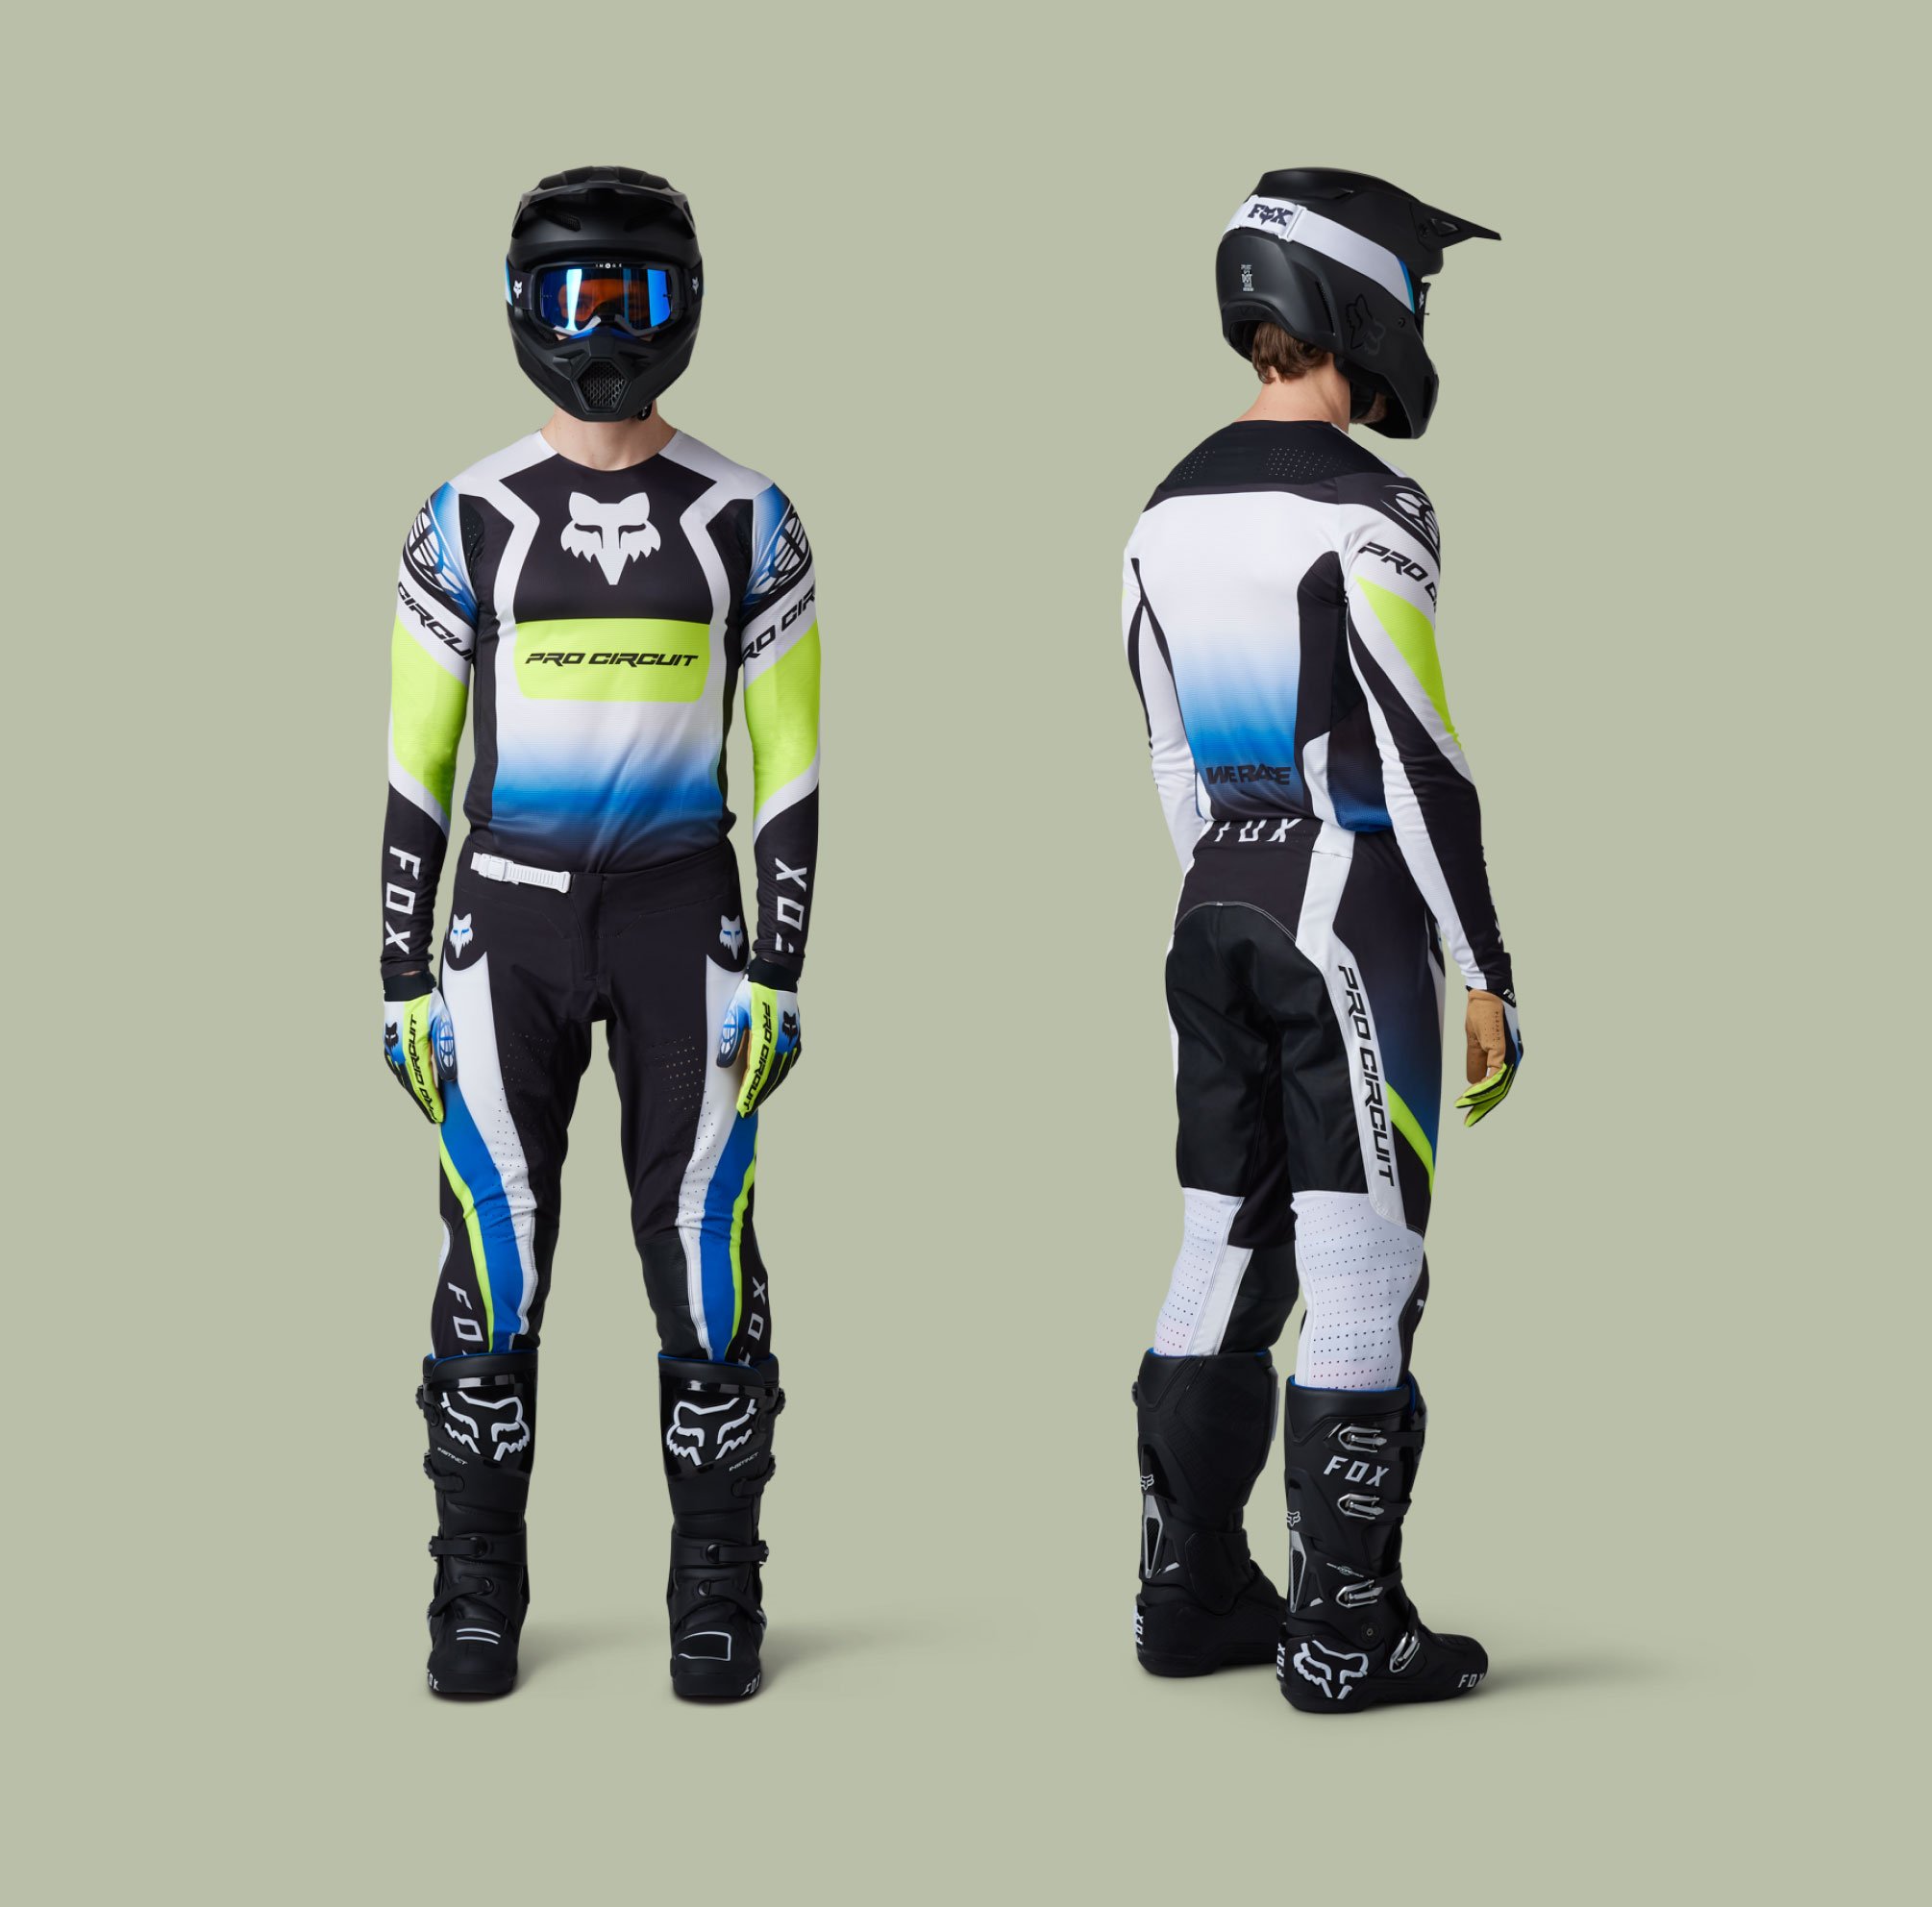 Two models wearing Flexair racewear.